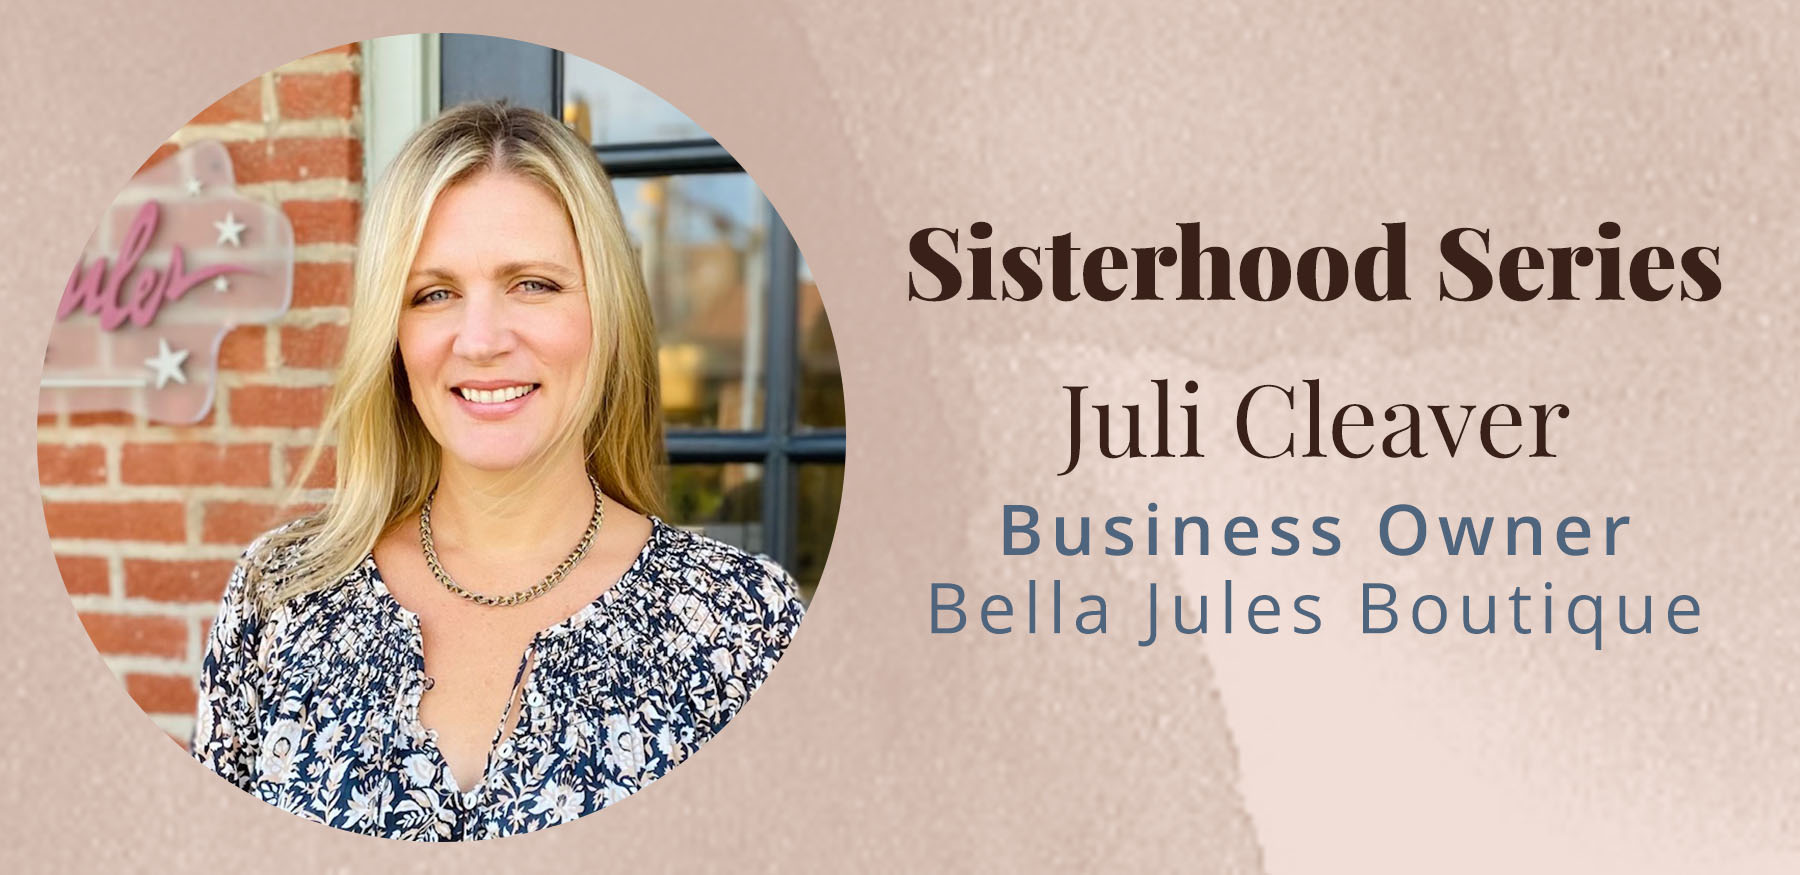 Sisterhood Series with Juli Cleaver